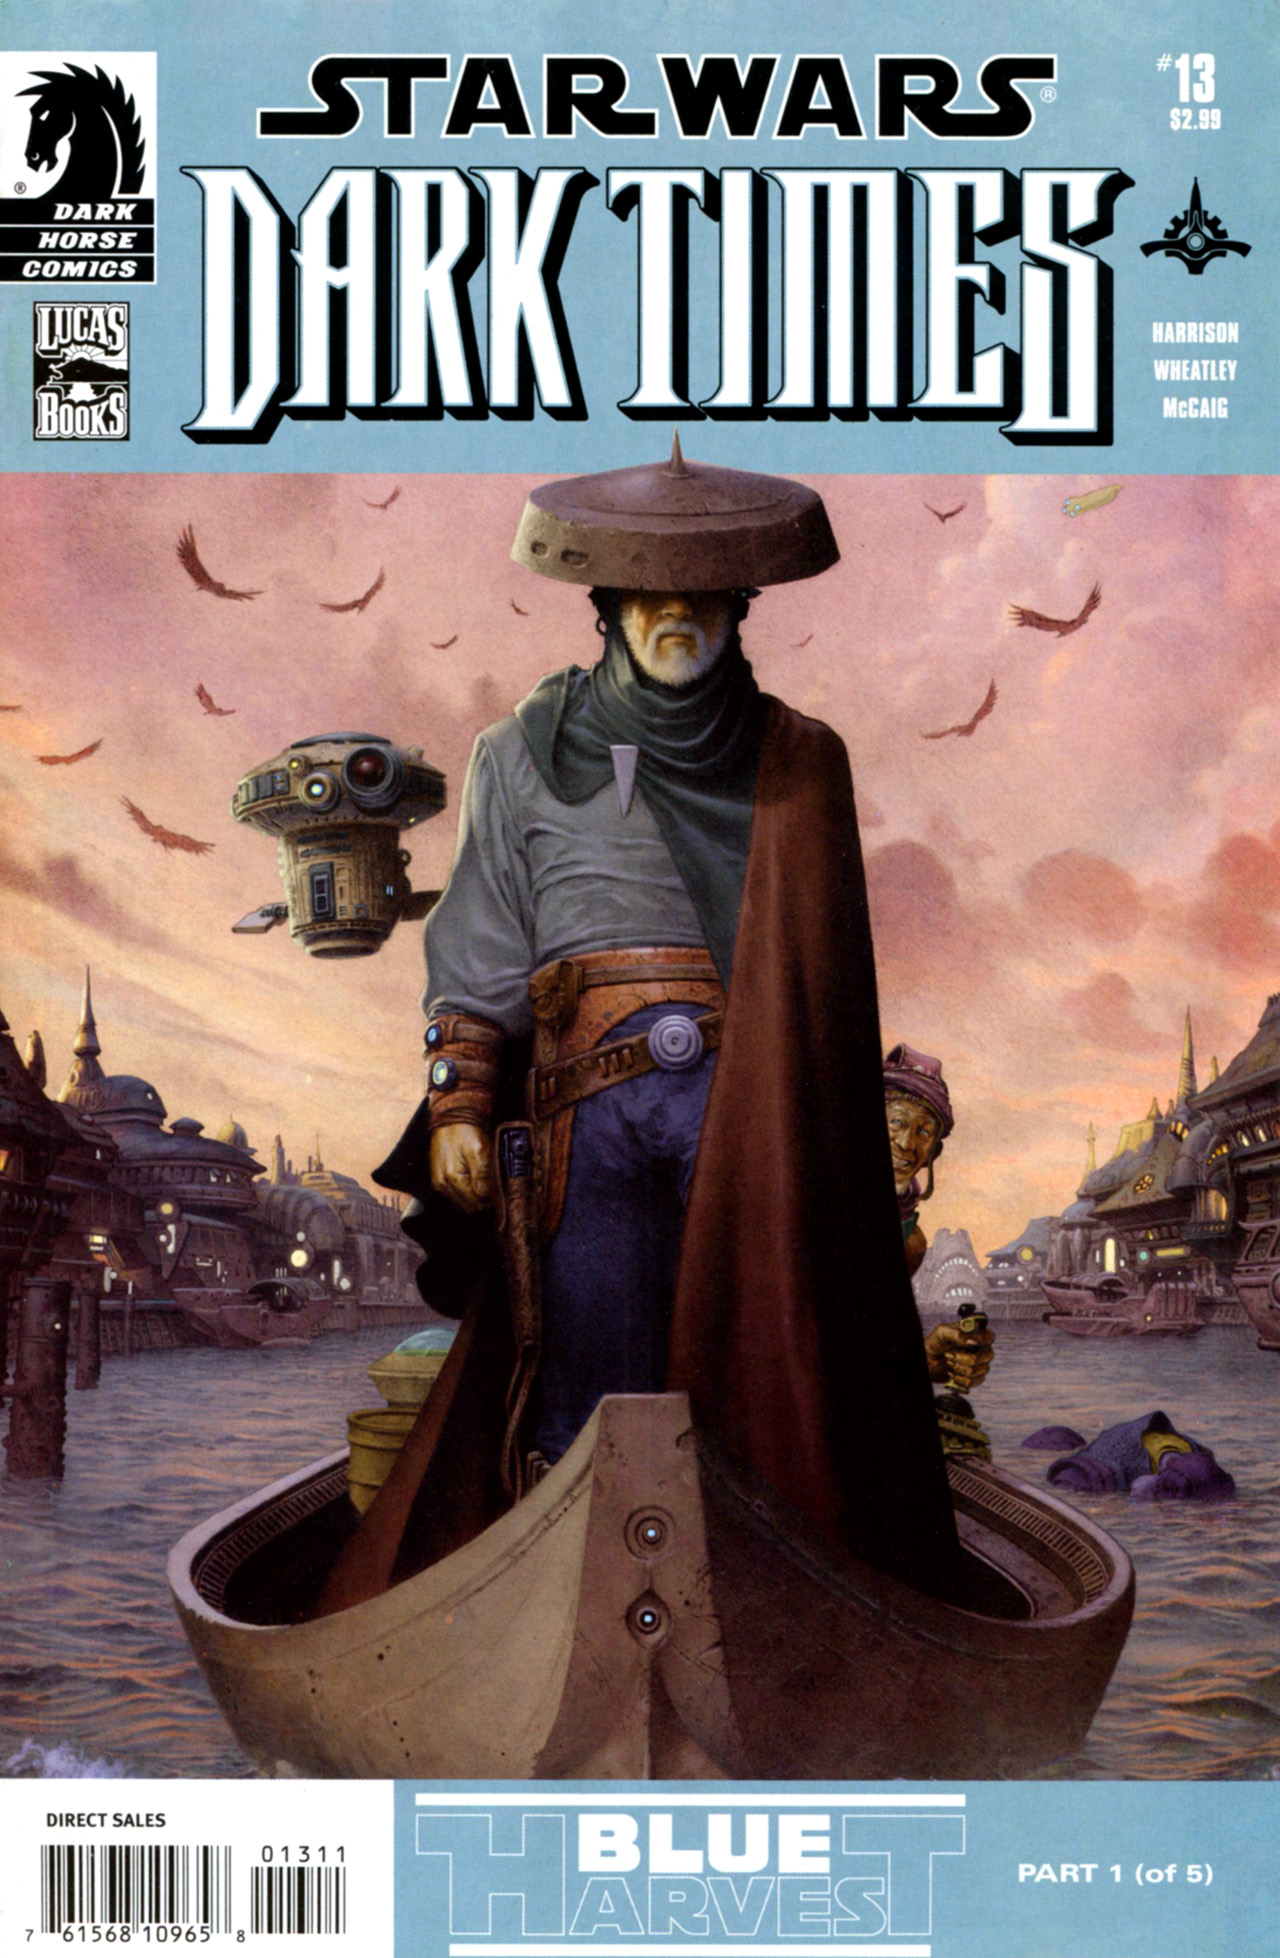 Star Wars: Dark Times issue 13 - Blue Harvest, Part 1 - Page 1